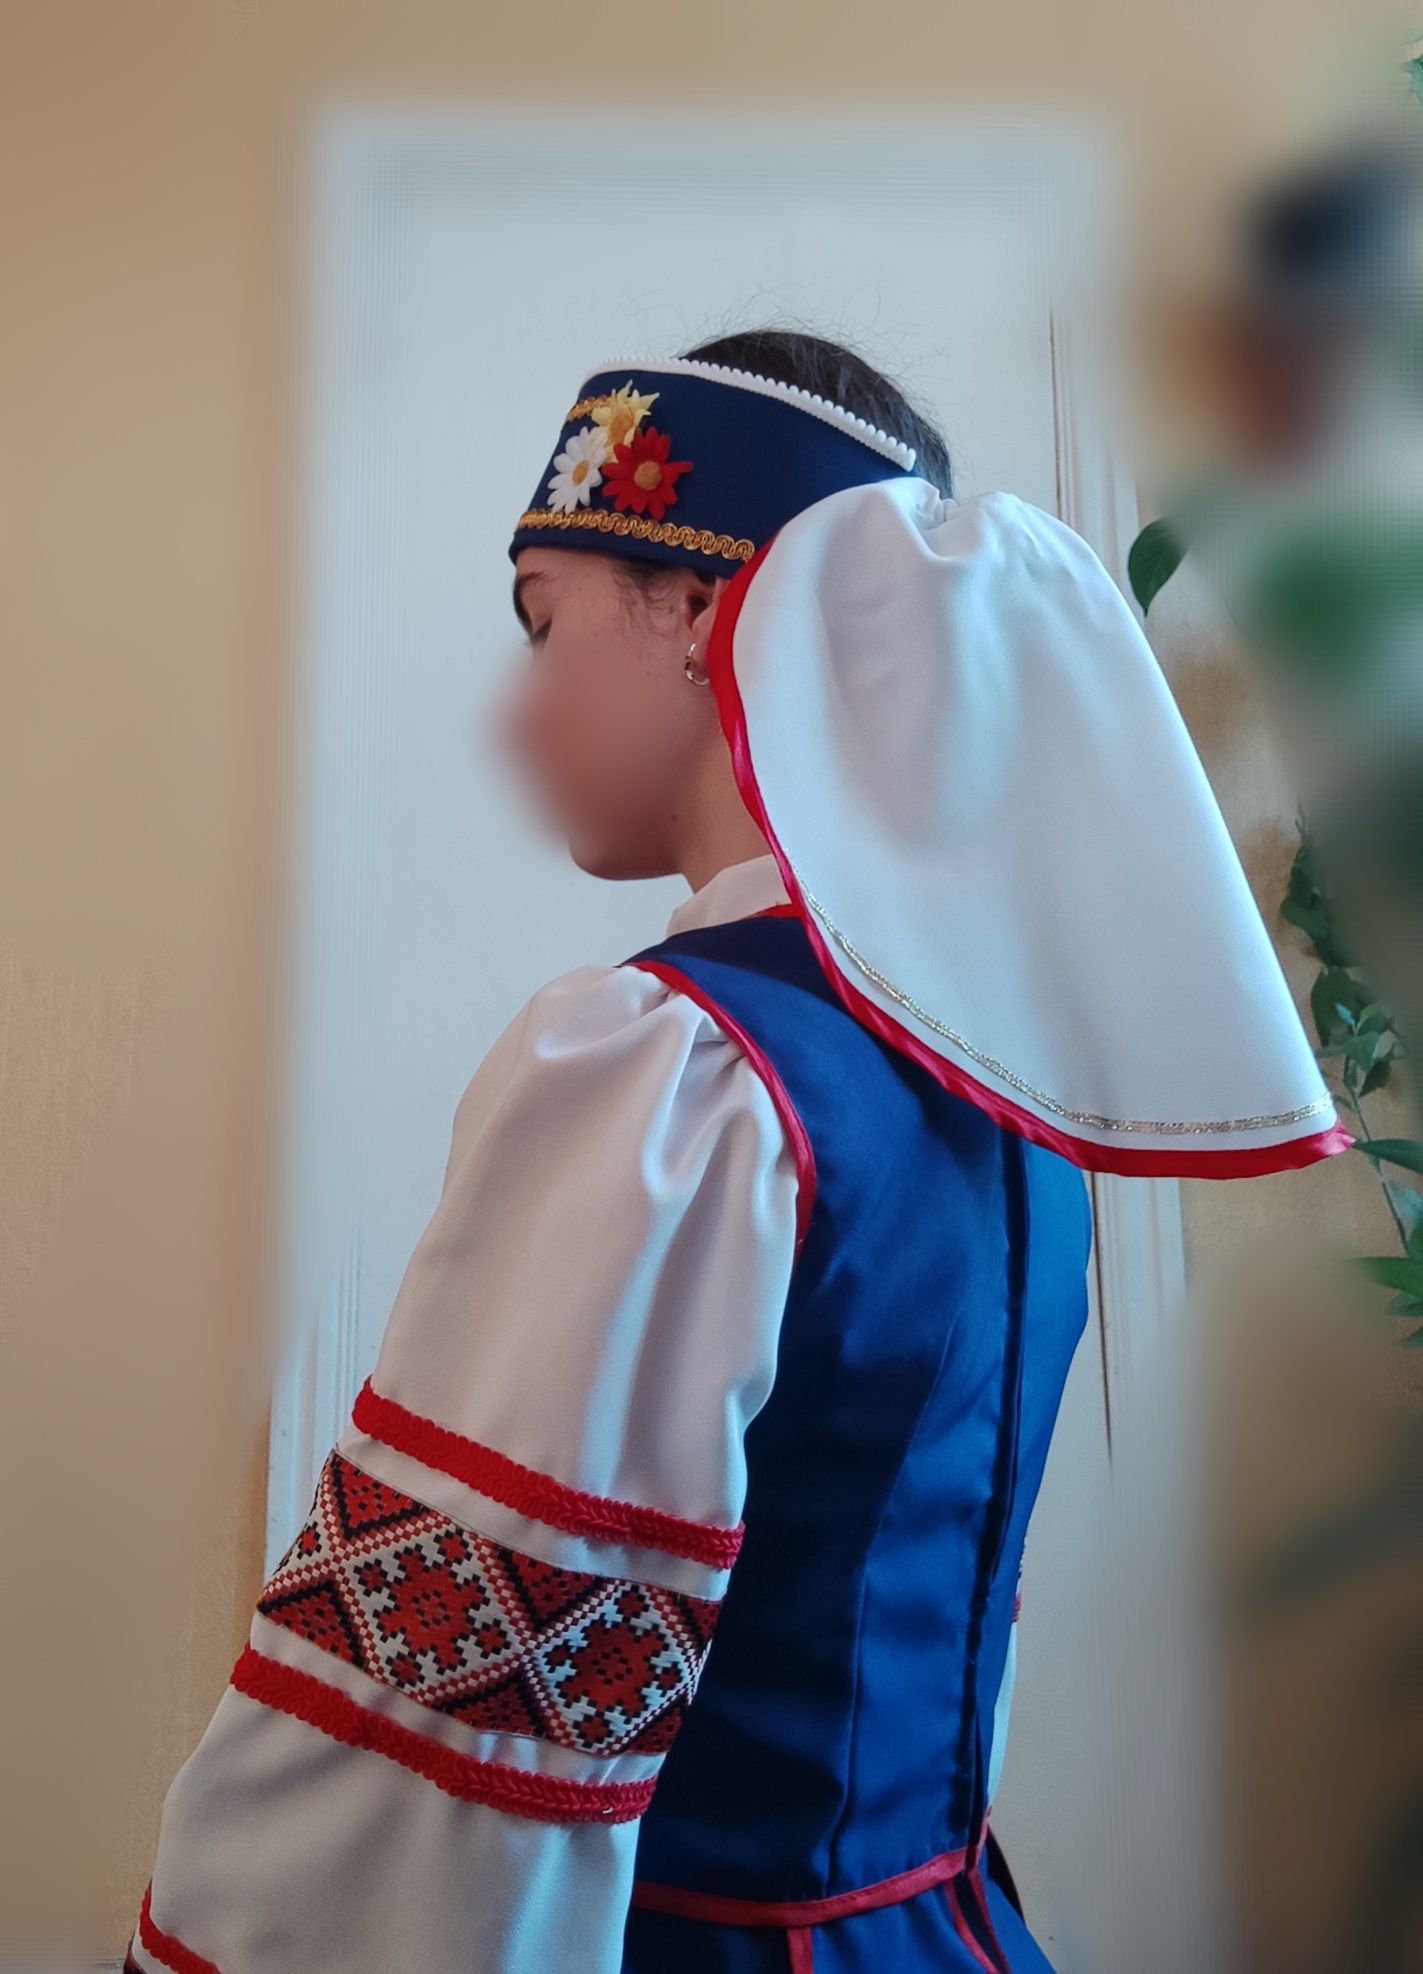 Український національний костюм. Вишиванка зі спідницею